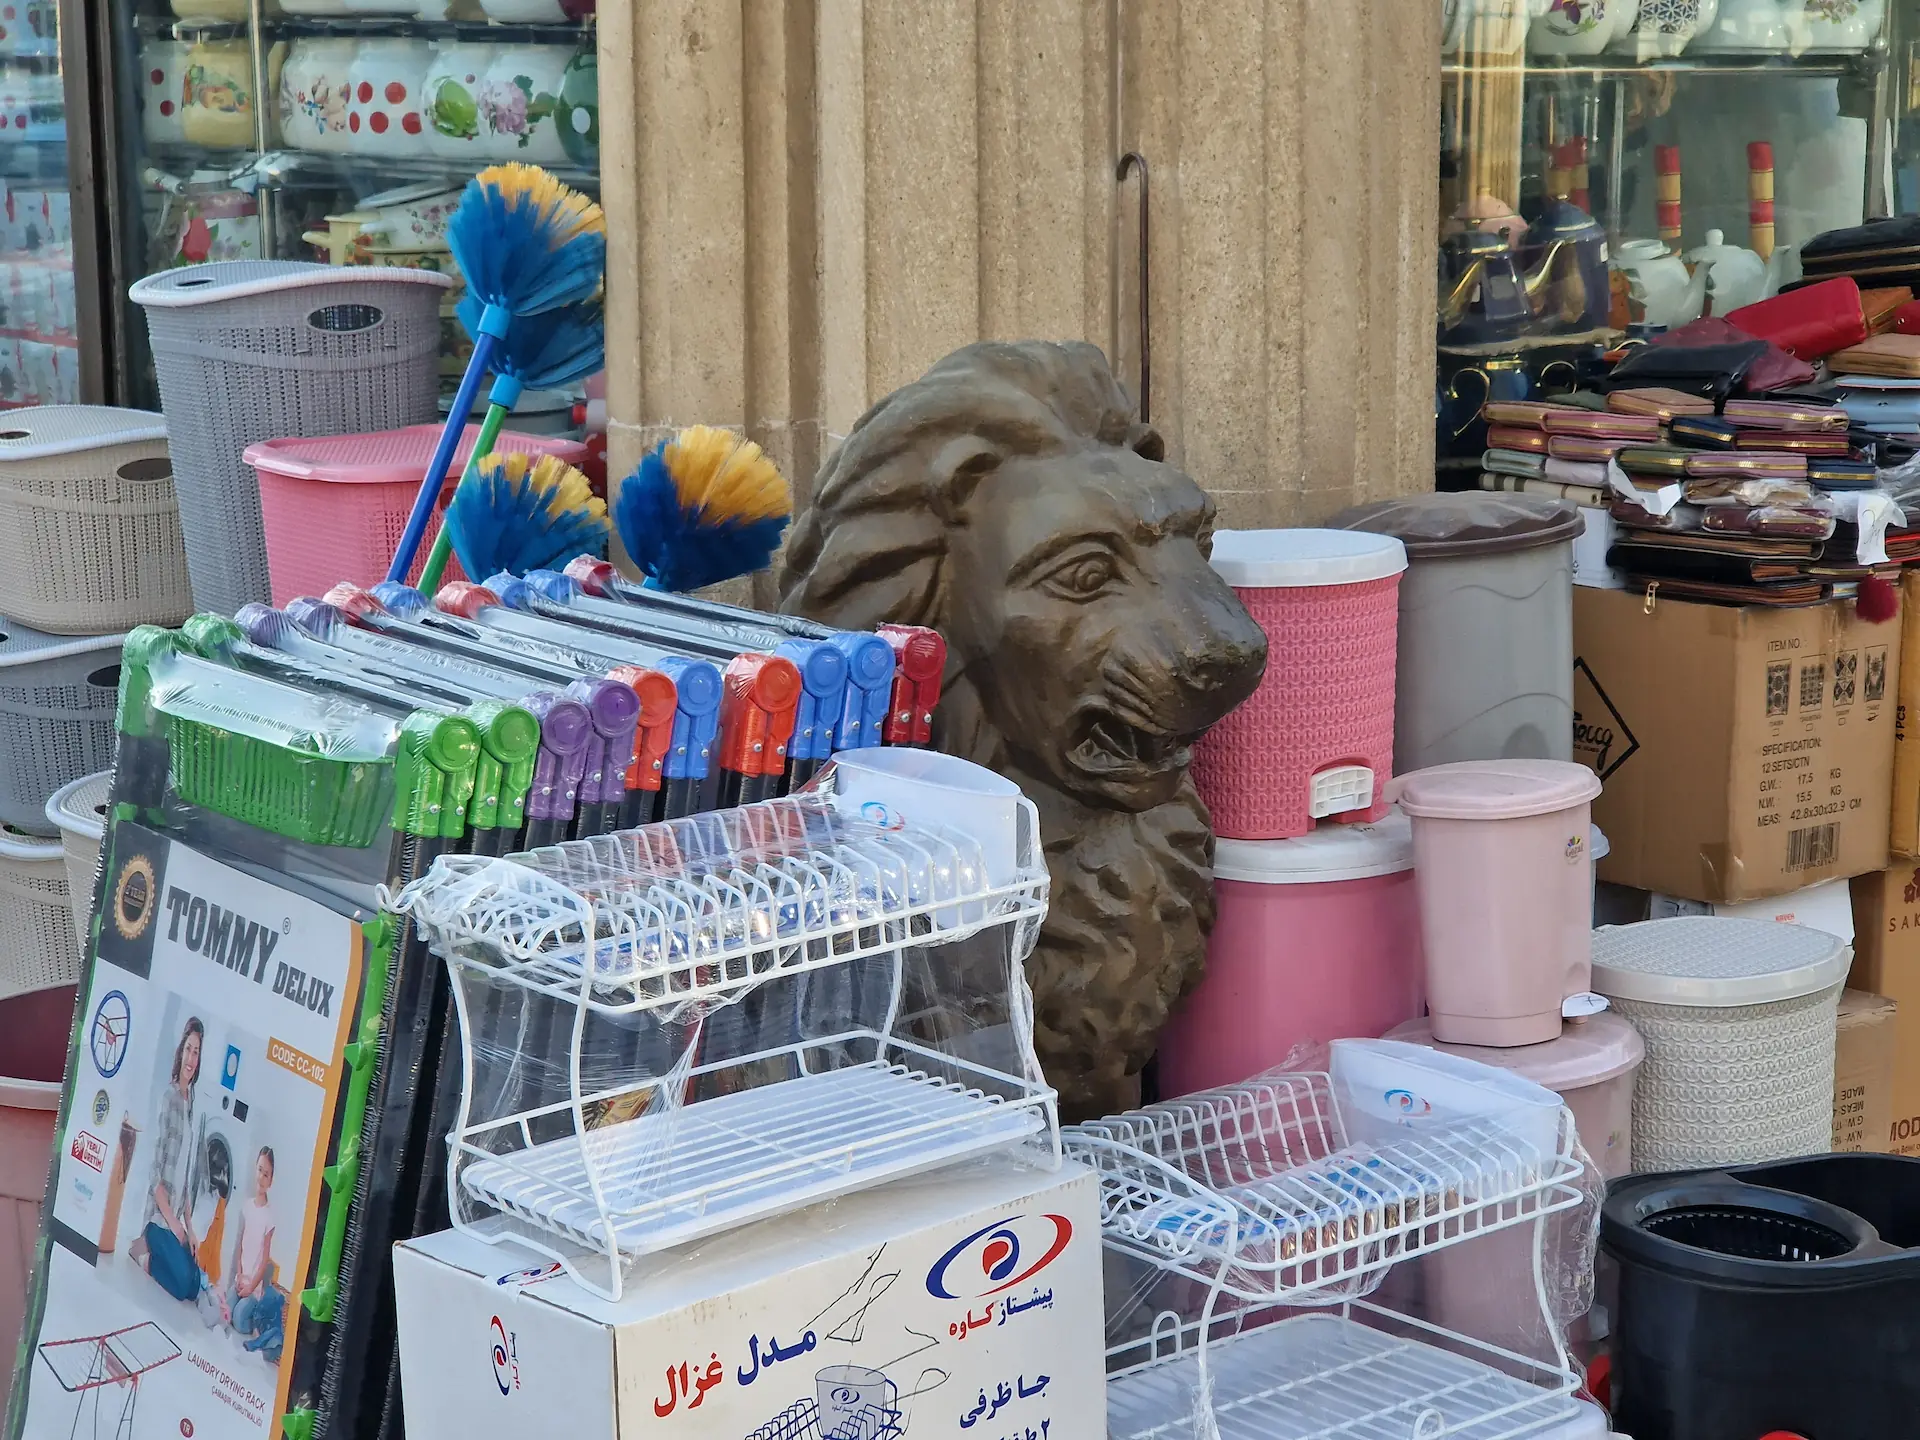 Au marché, une statue de lion est vendue, coincée entre les autres marchandises : poubelles en plastique, étendoir à linge, porte-monnaies, balais.